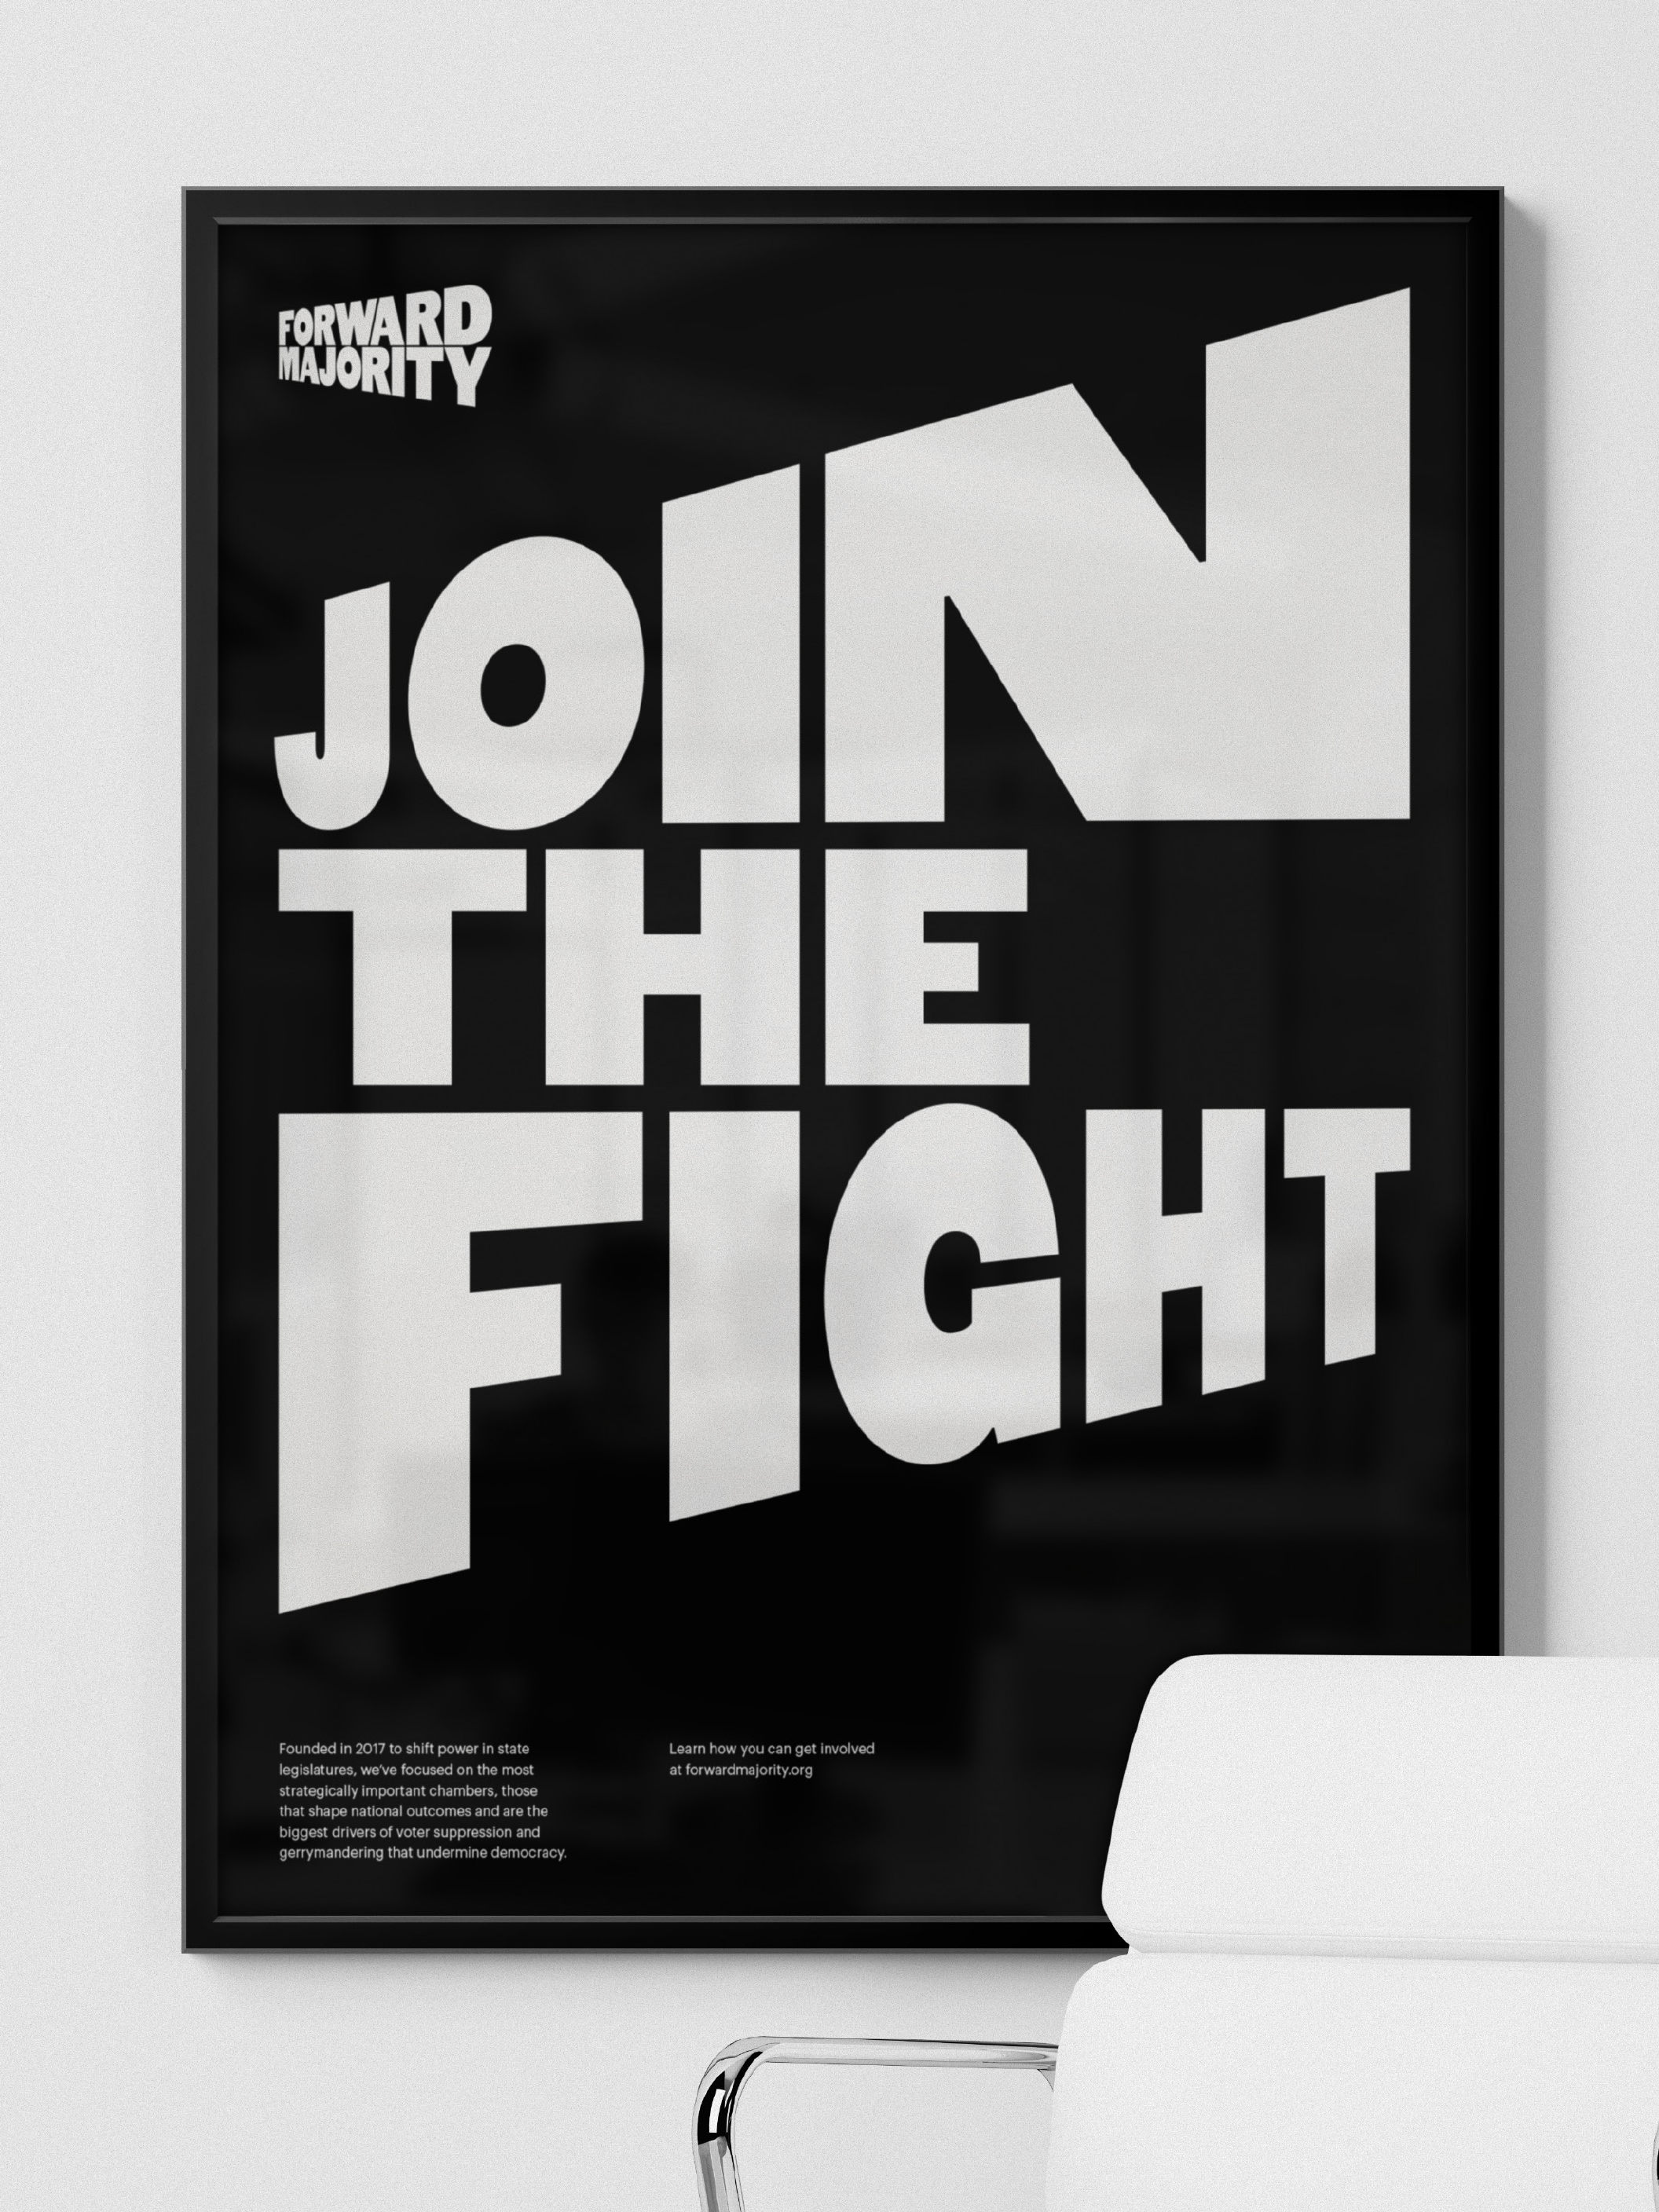 Identitas visual dan poster untuk komite aksi politik Forward Majority dirancang oleh studio Order yang berbasis di New York